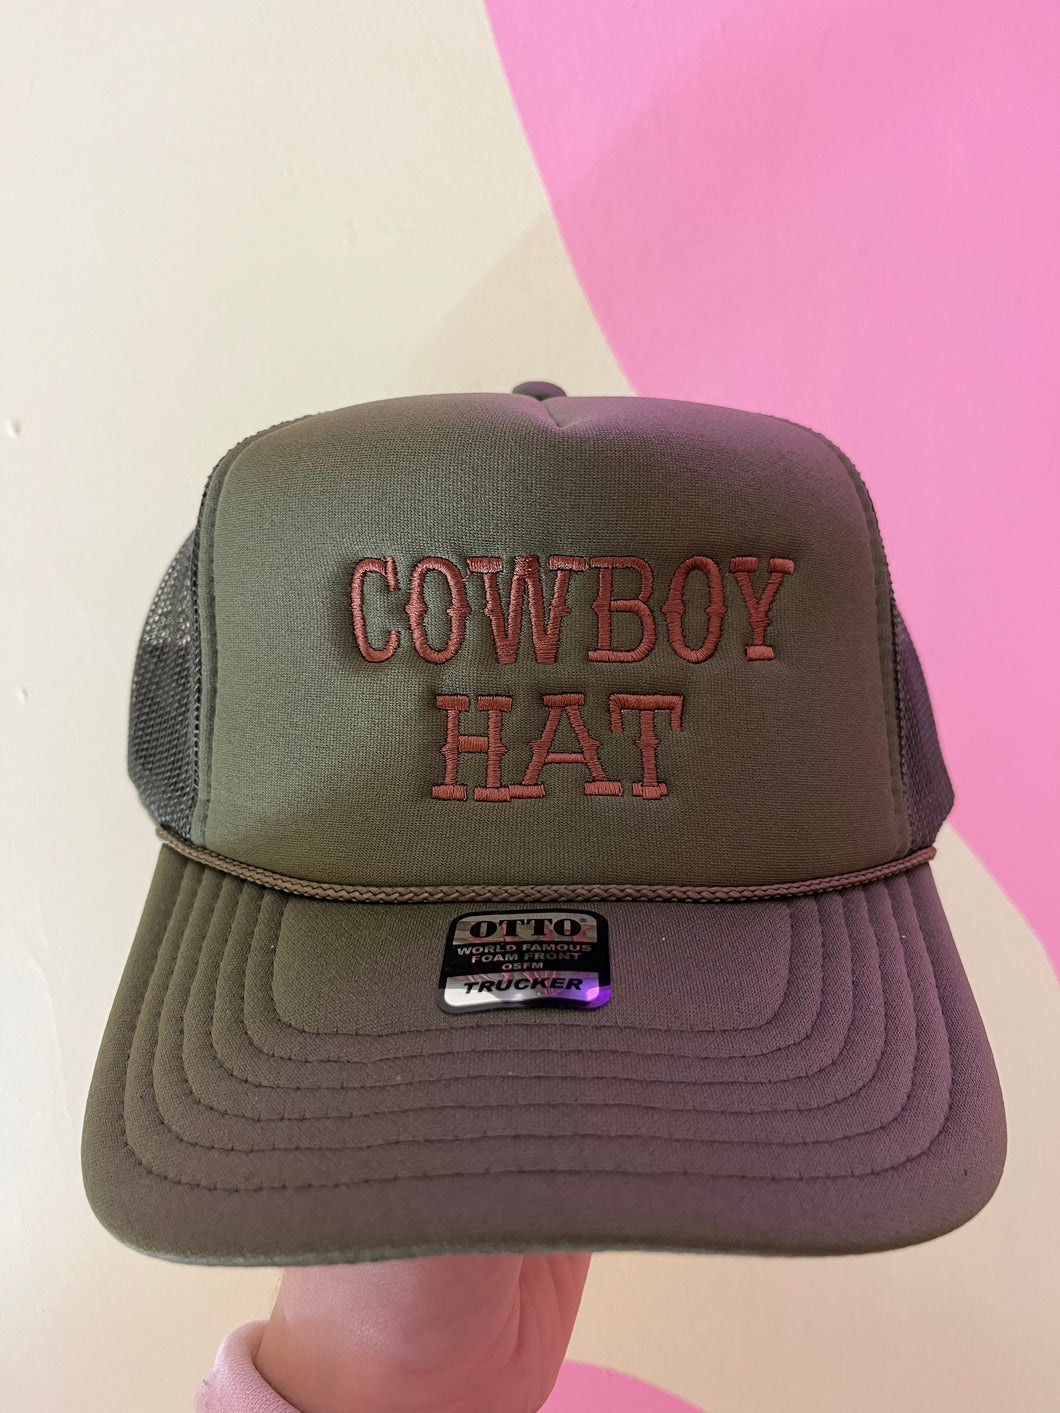 Embroidered Cowboy hat trucker hat